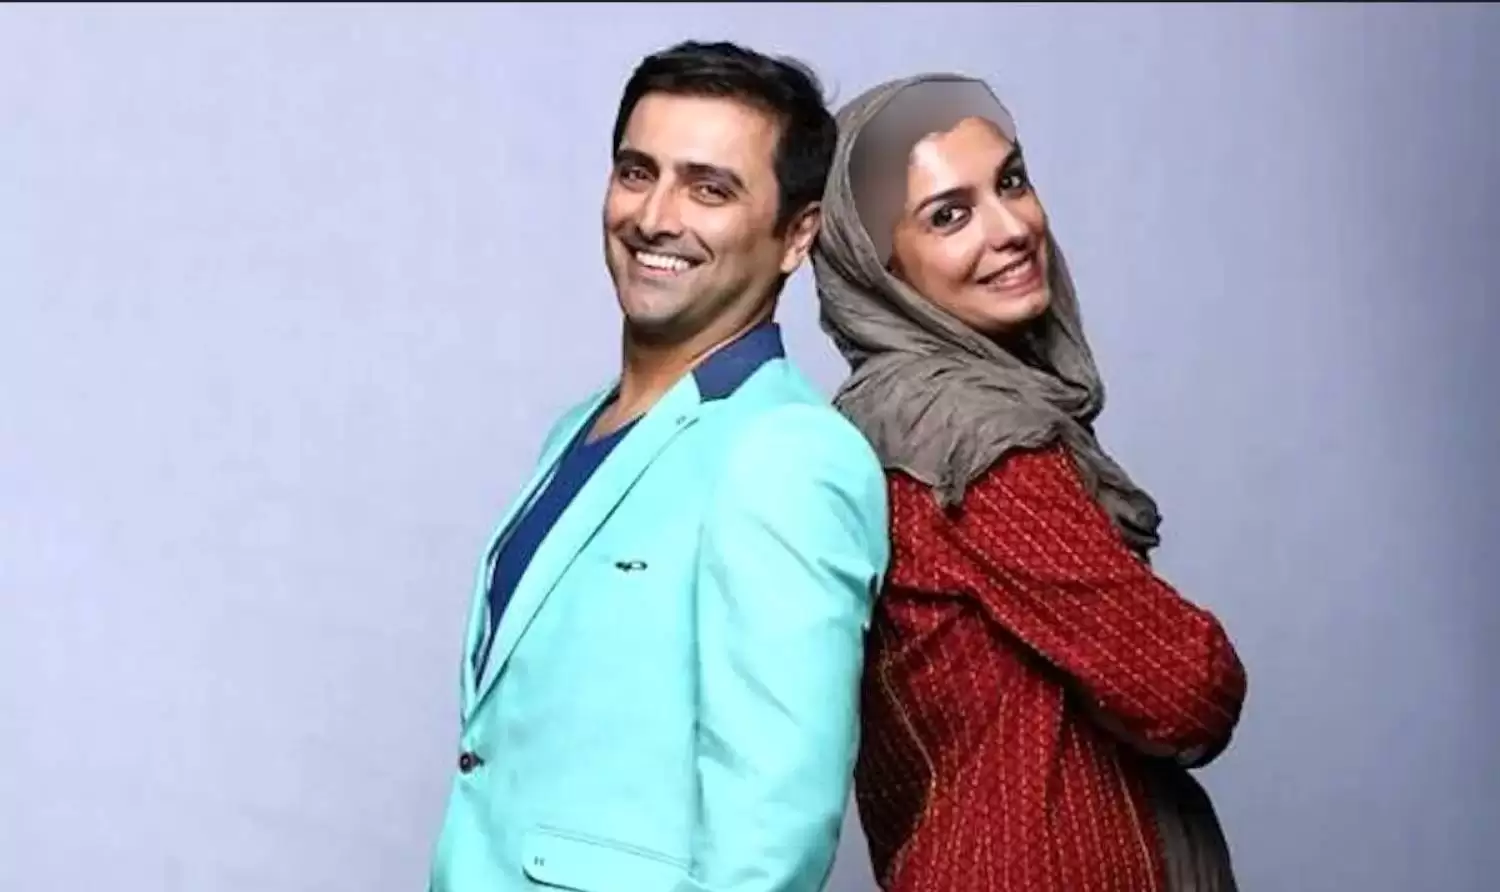  قشنگ ترین و جذاب ترین زوج های بازیگر ایران  -   + اسامی باورنکردنی ، تصاویر و بیوگرافی